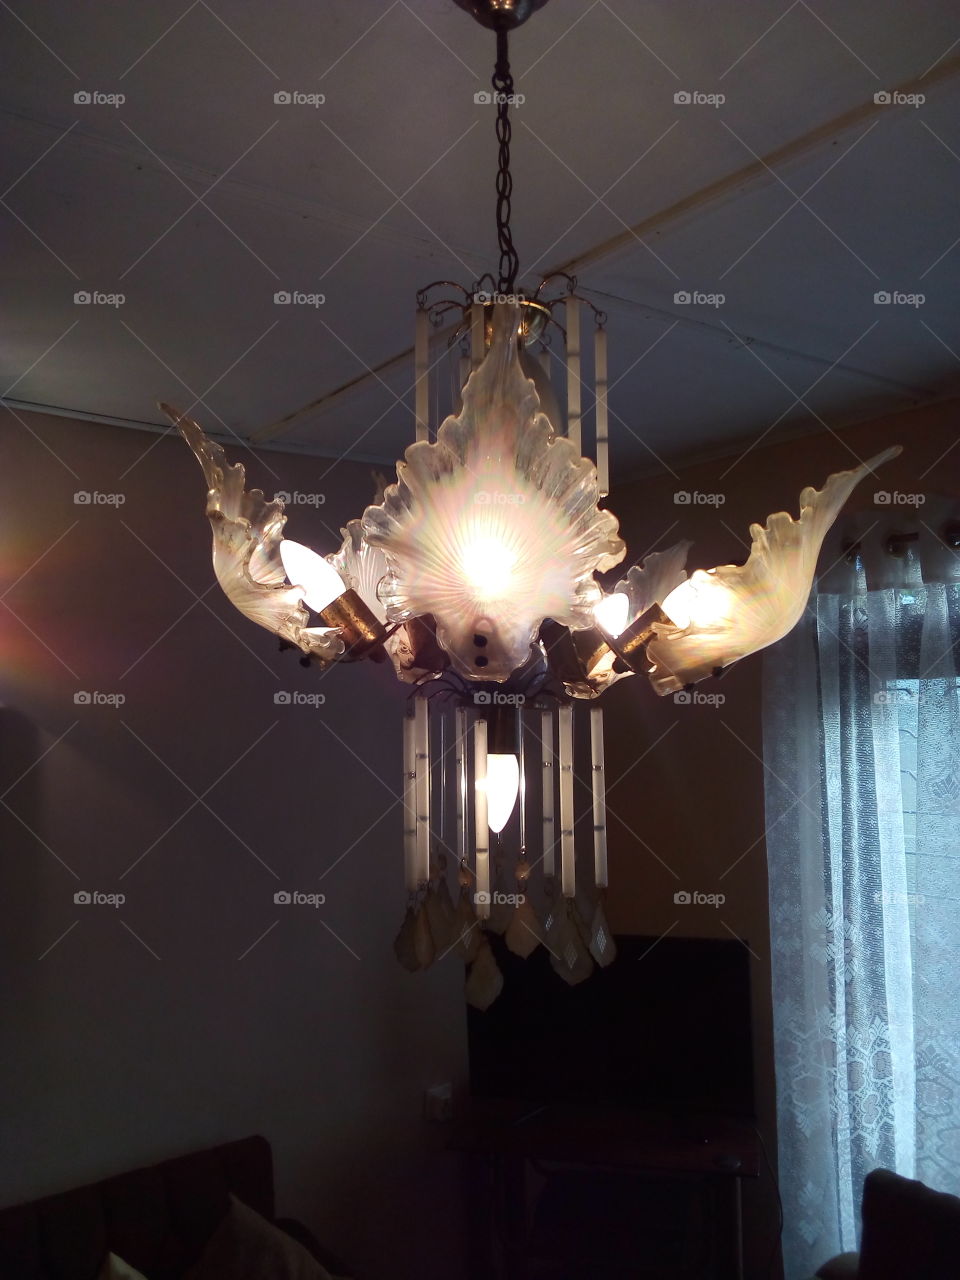 chandelier lighting